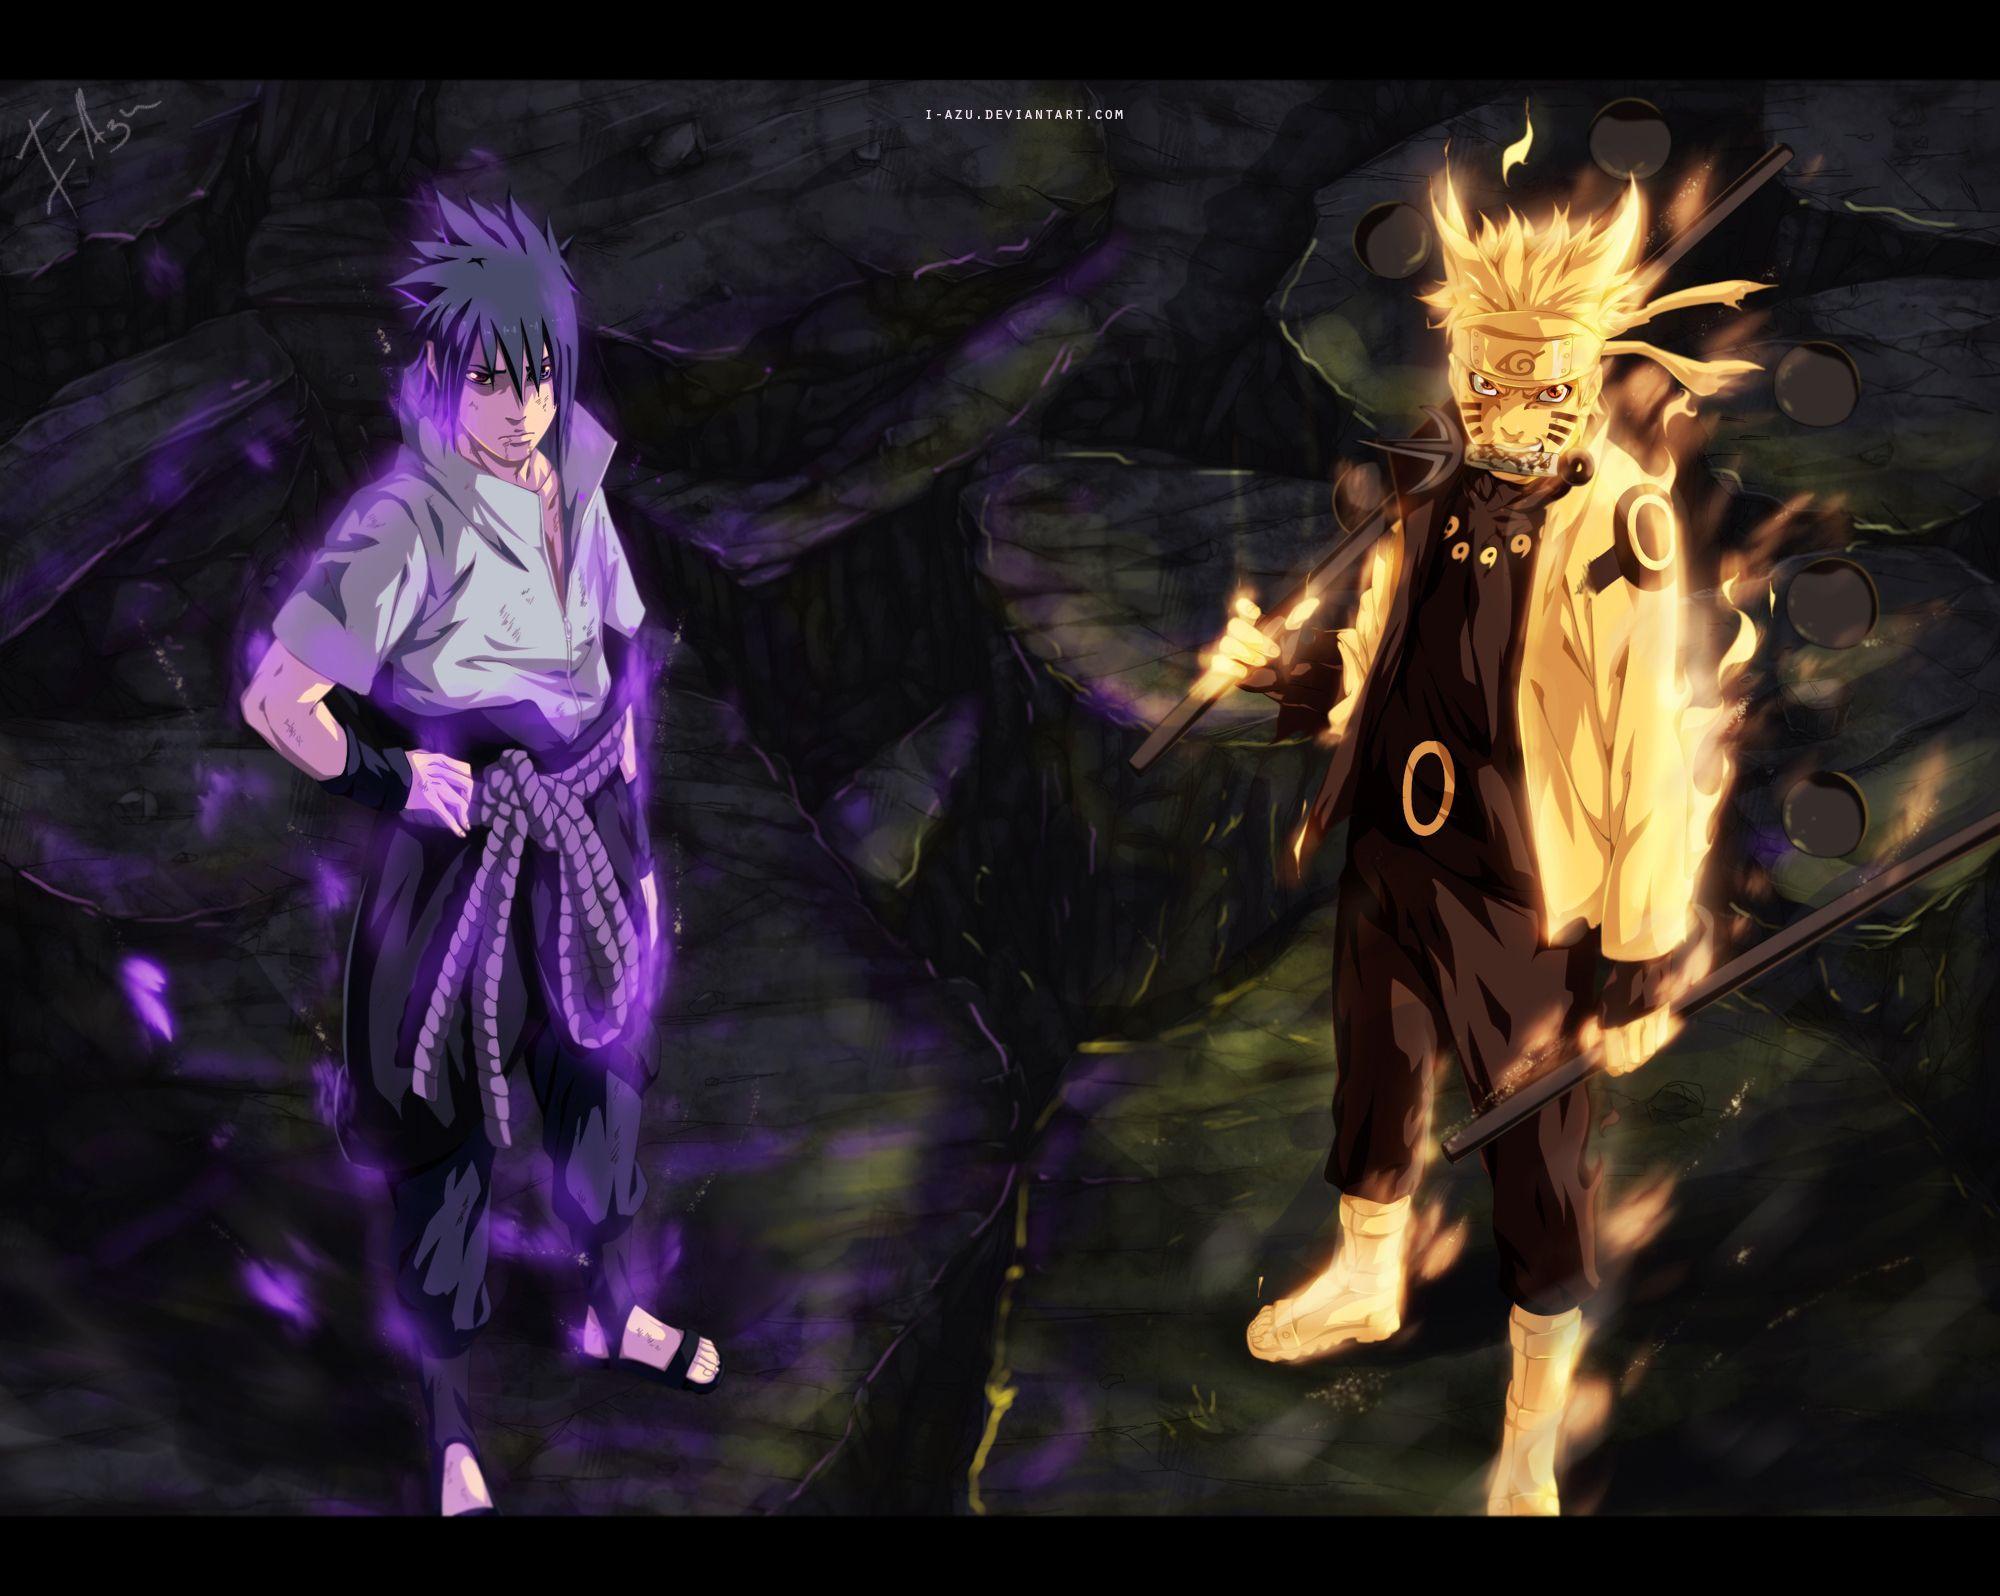 Sasuke & Naruto #naruto #uzumaki #sasuke #uchiha #susanoo #bijuu